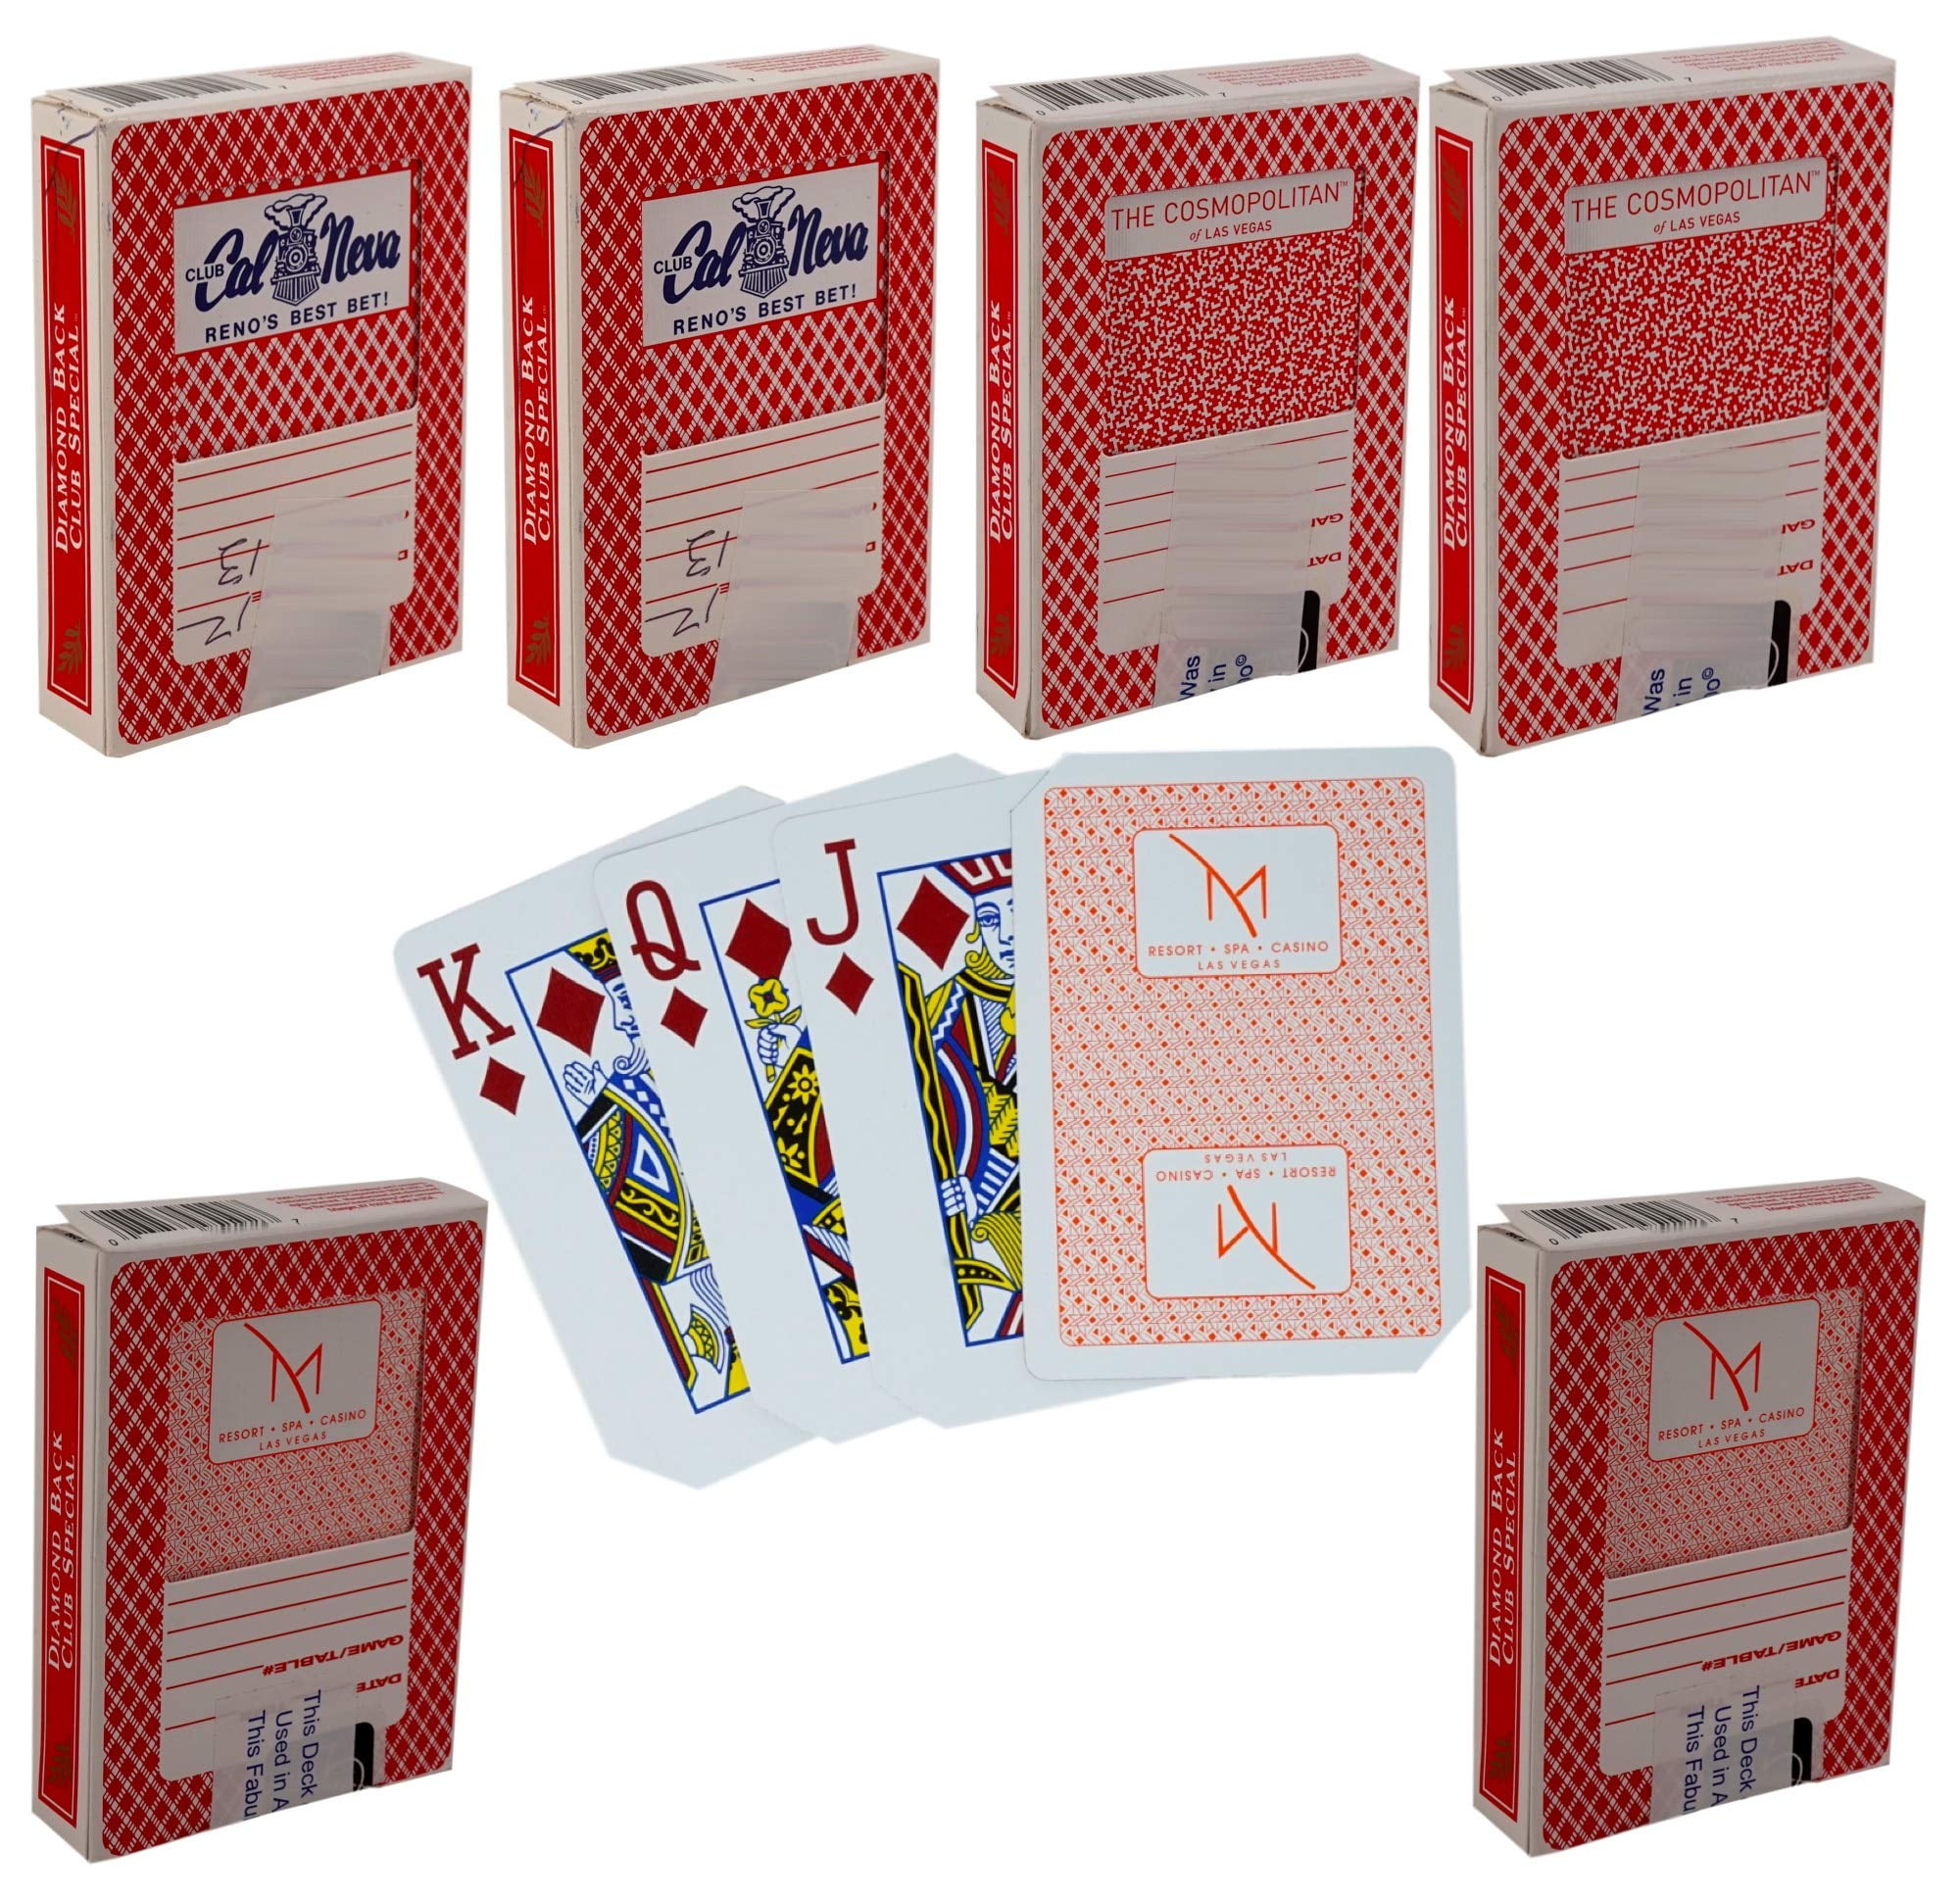 las vegas casino playing cards